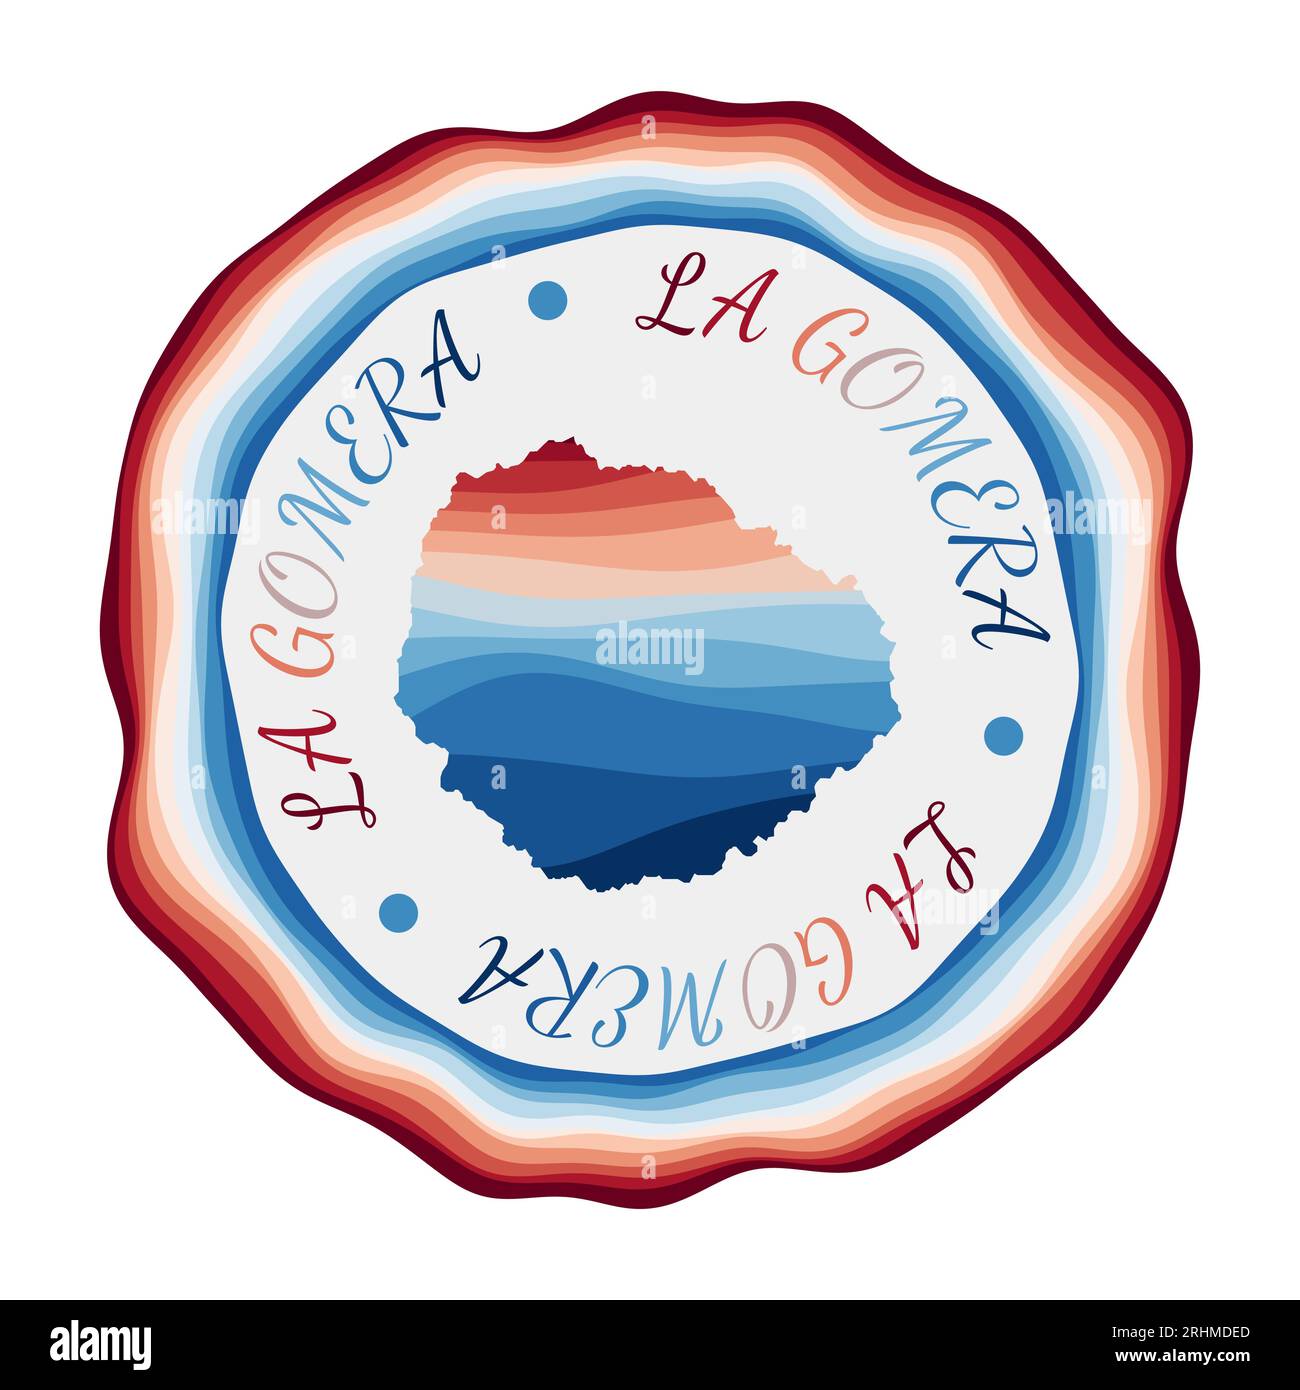 La Gomera-Emblem. Karte der Insel mit wunderschönen geometrischen Wellen und leuchtend blauem Rahmen. Lebhaftes rundes La Gomera-Logo. Vektorillustration. Stock Vektor